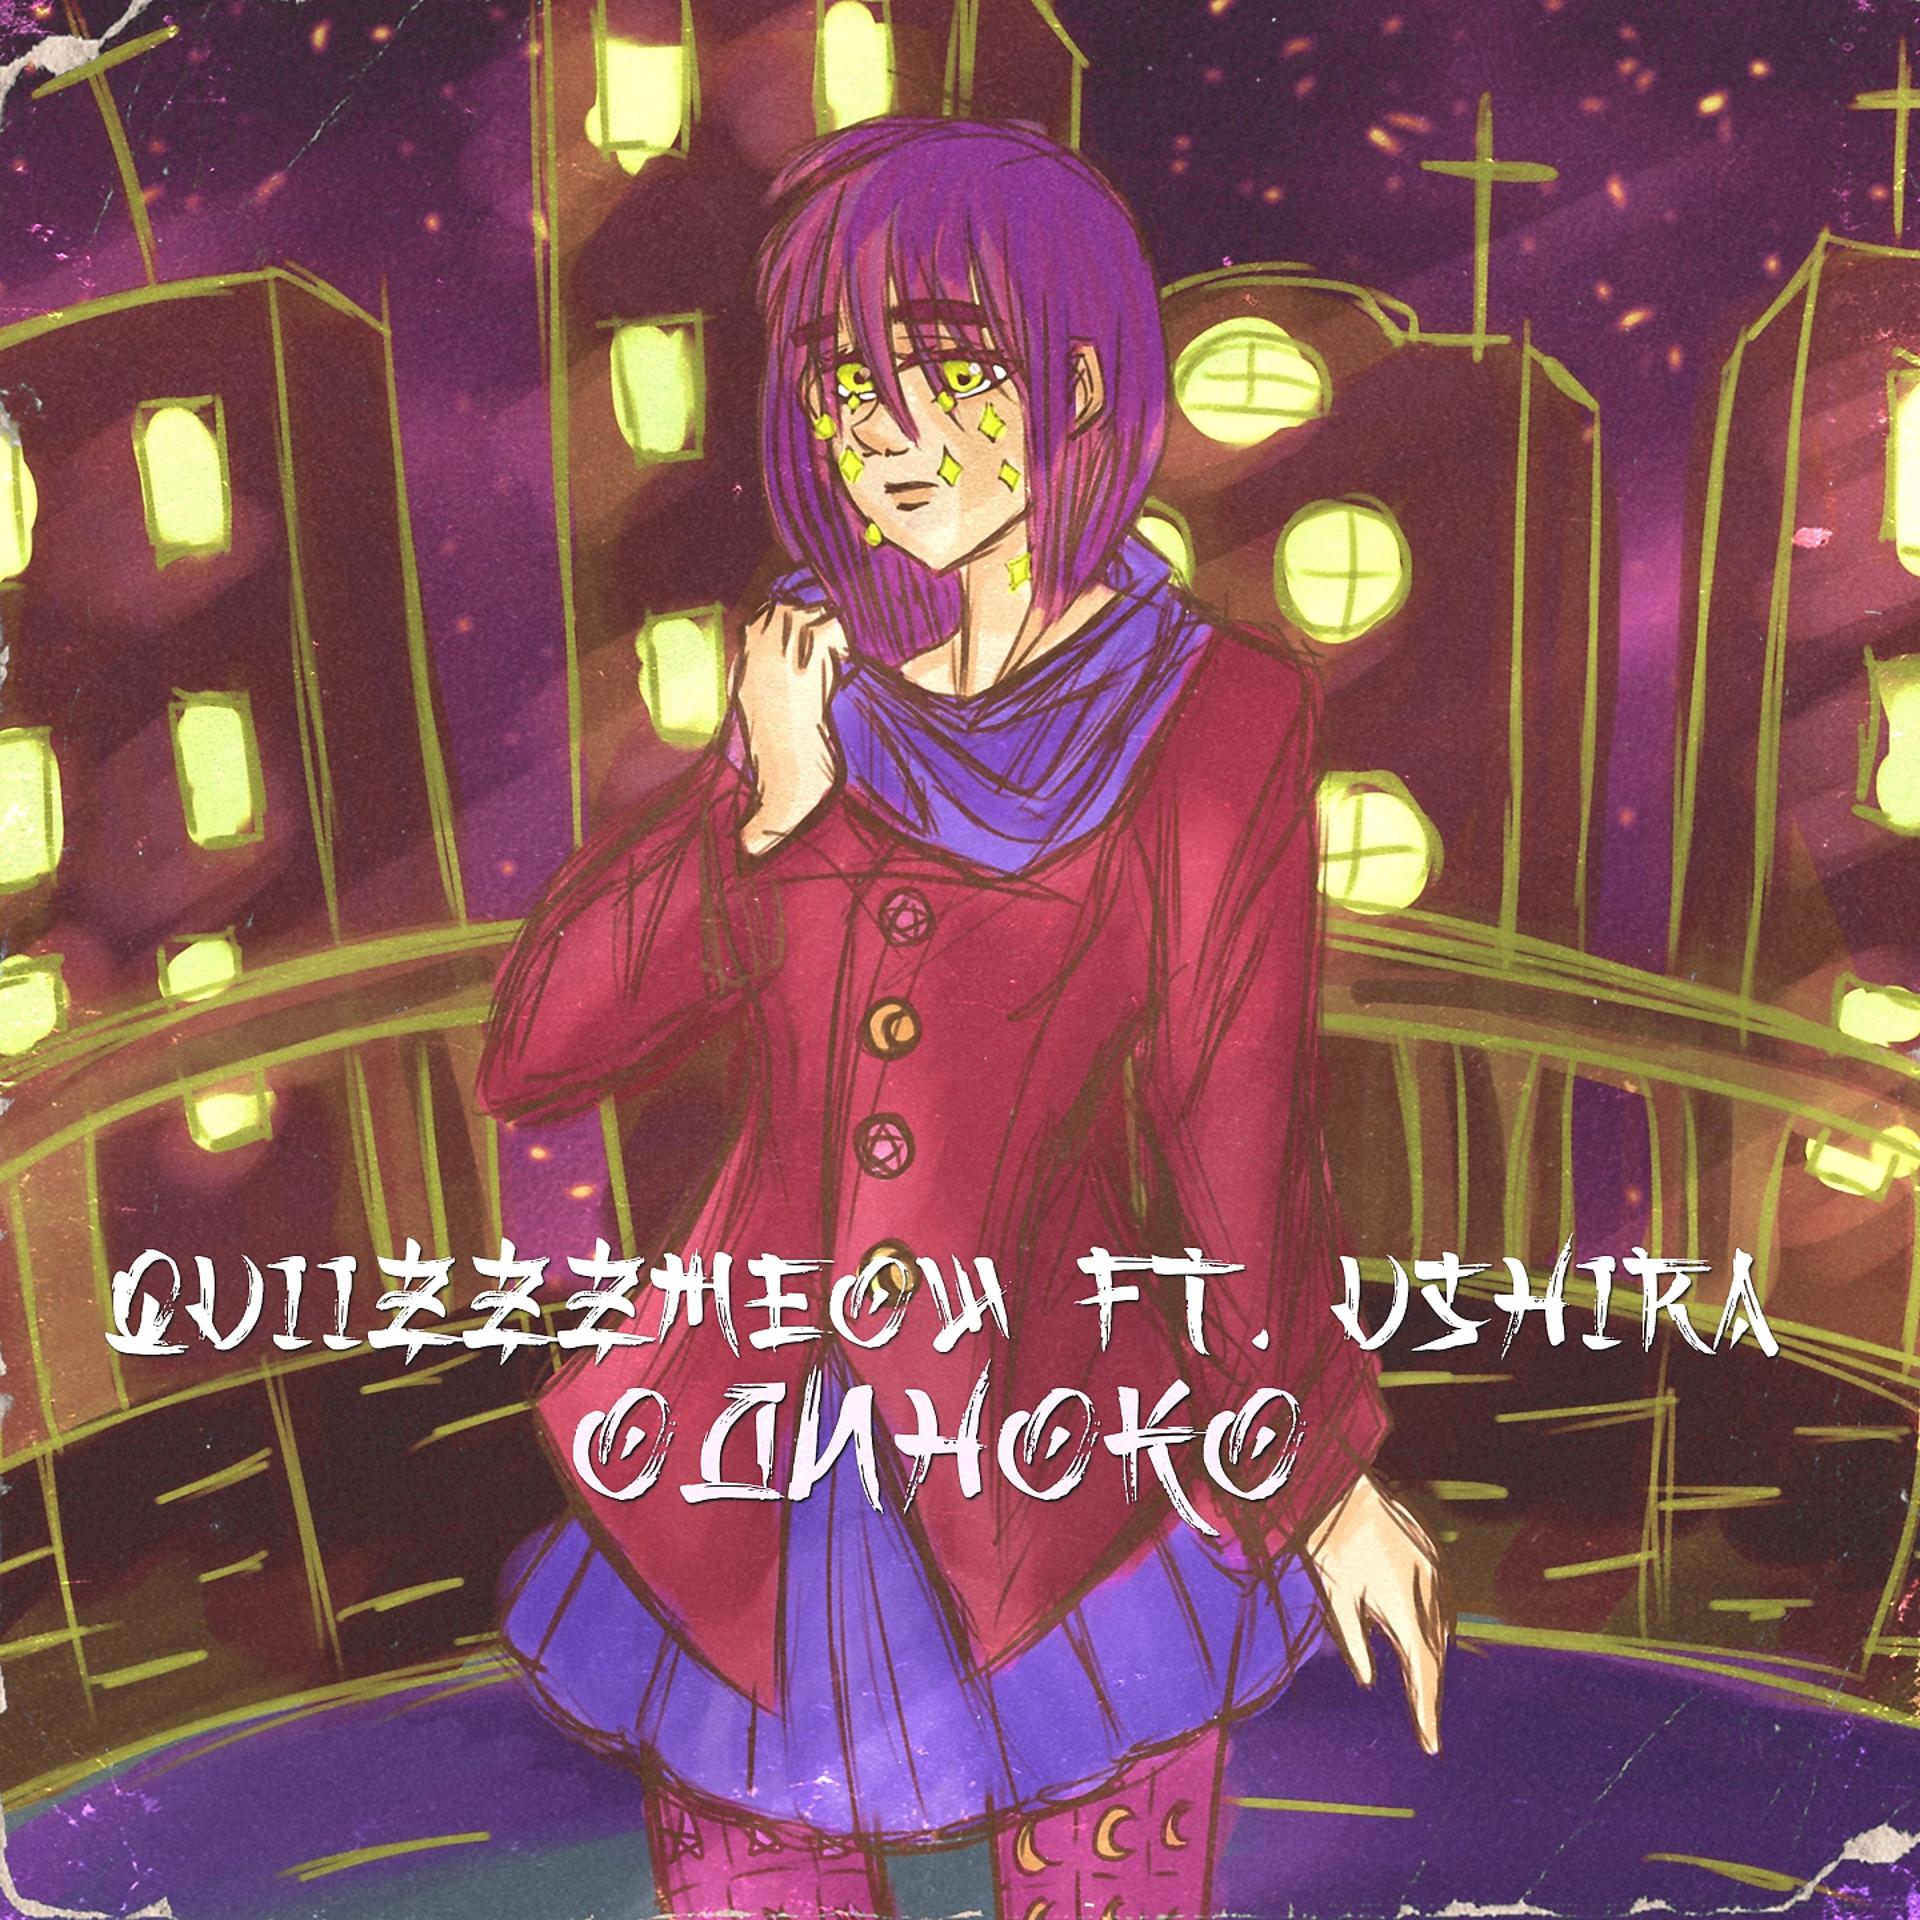 Постер к треку quiizzzmeow, Ushira - Одиноко